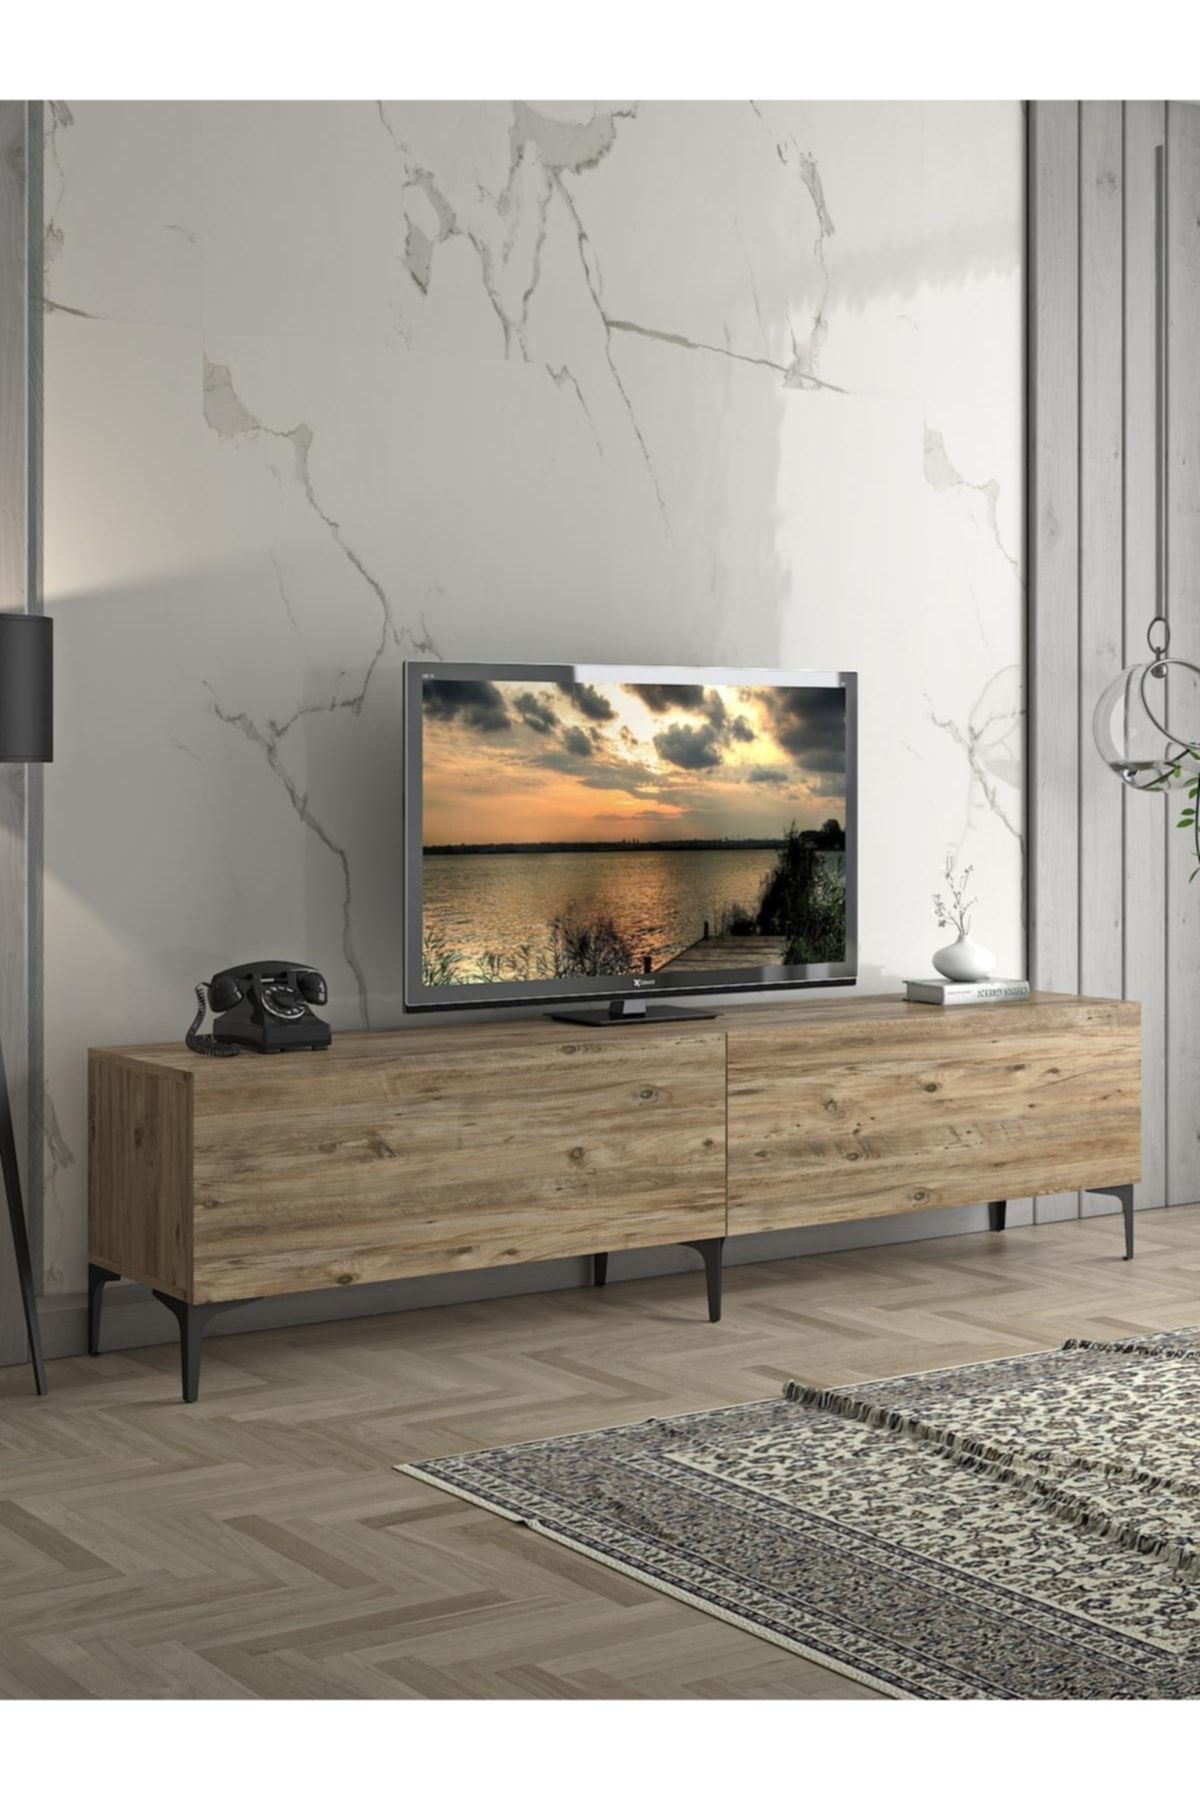 Wood'n Love Vega Premium 200 Cm Geniş Dolaplı Metal Ayaklı Tv Ünitesi - Atlantik Çam / Siyah